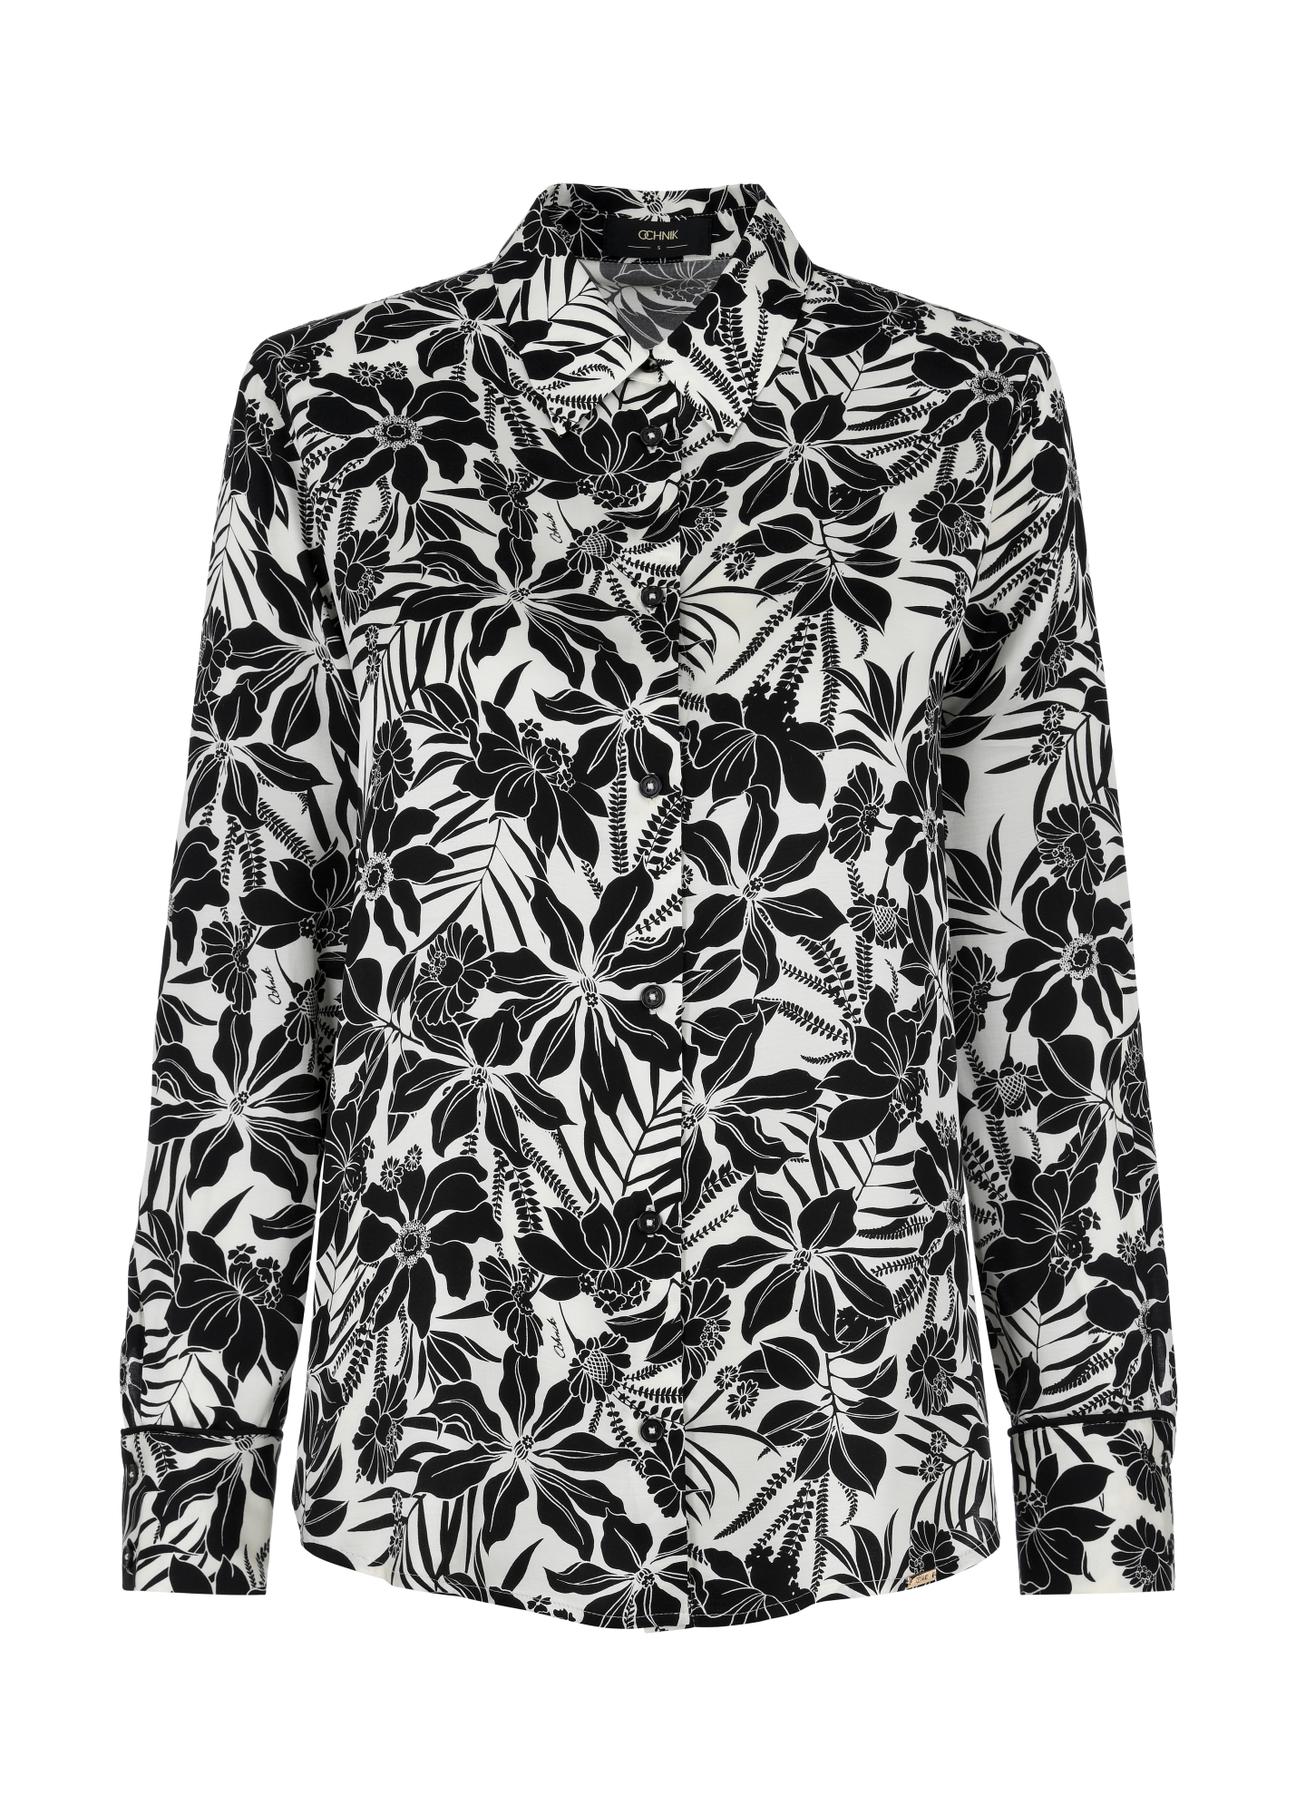 Zwiewna czarno-kremowa koszula damska KOSDT-0154-12(W24)